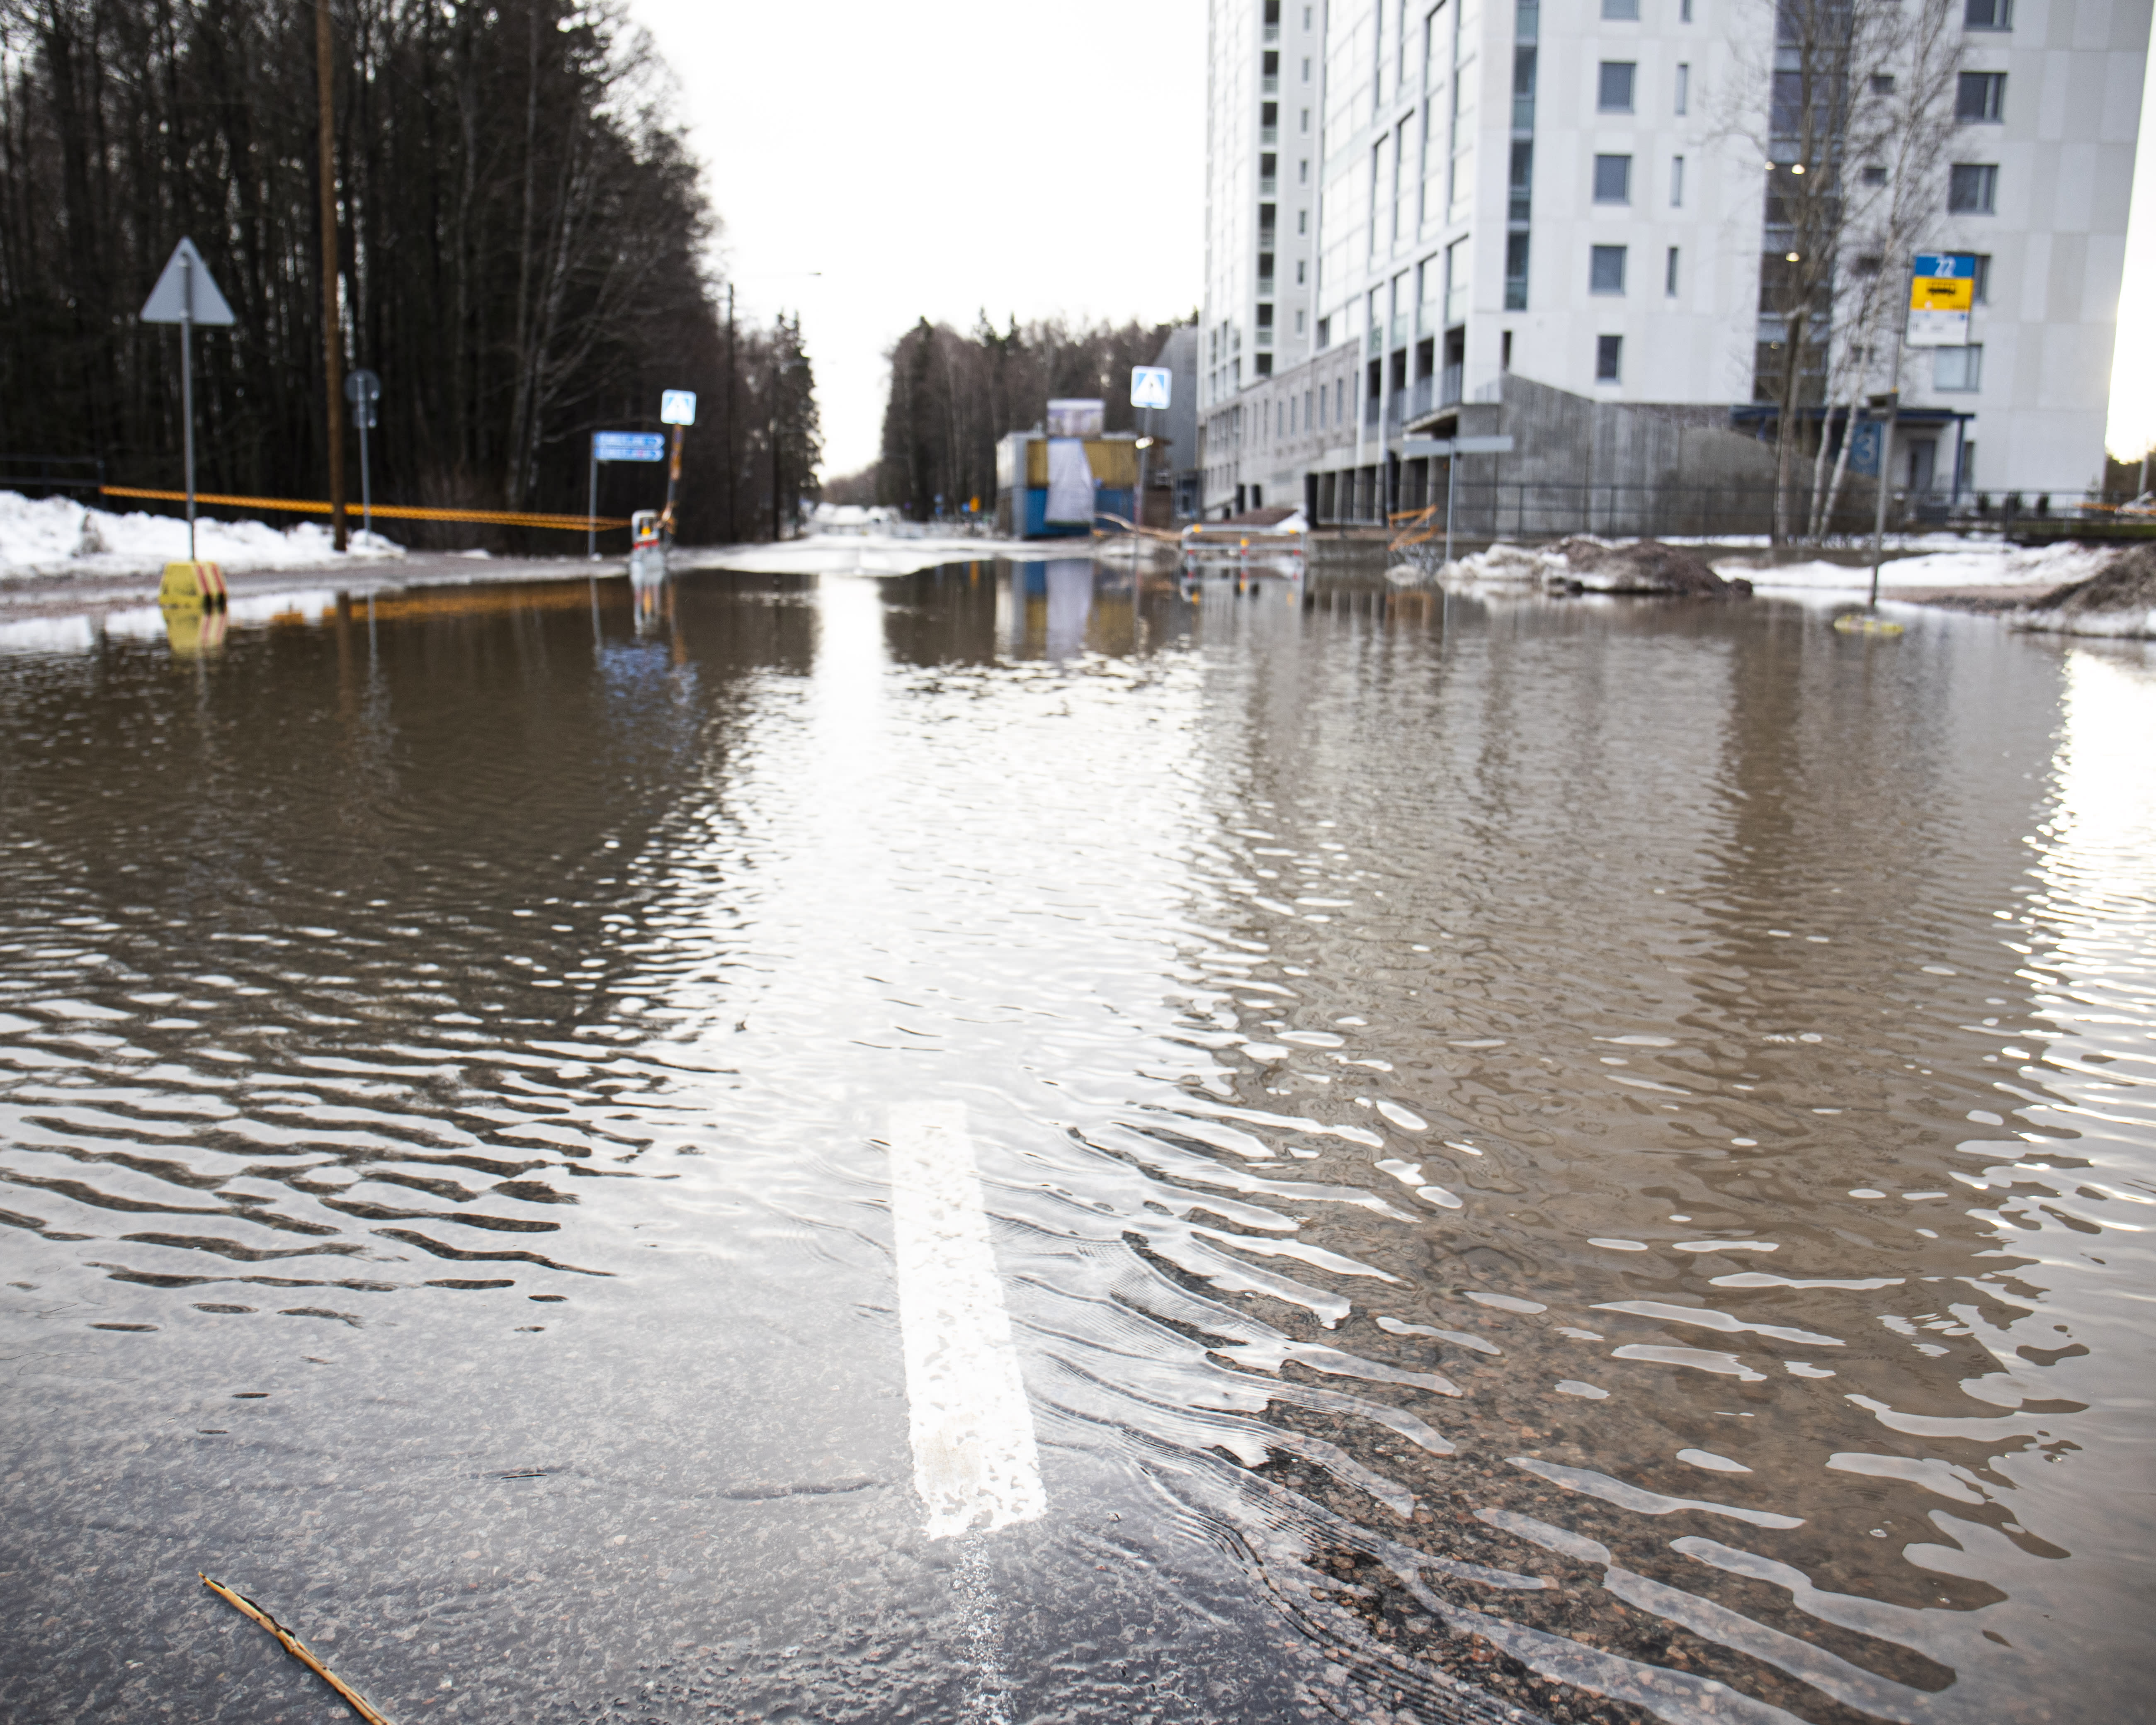 Winter floods hit Finland